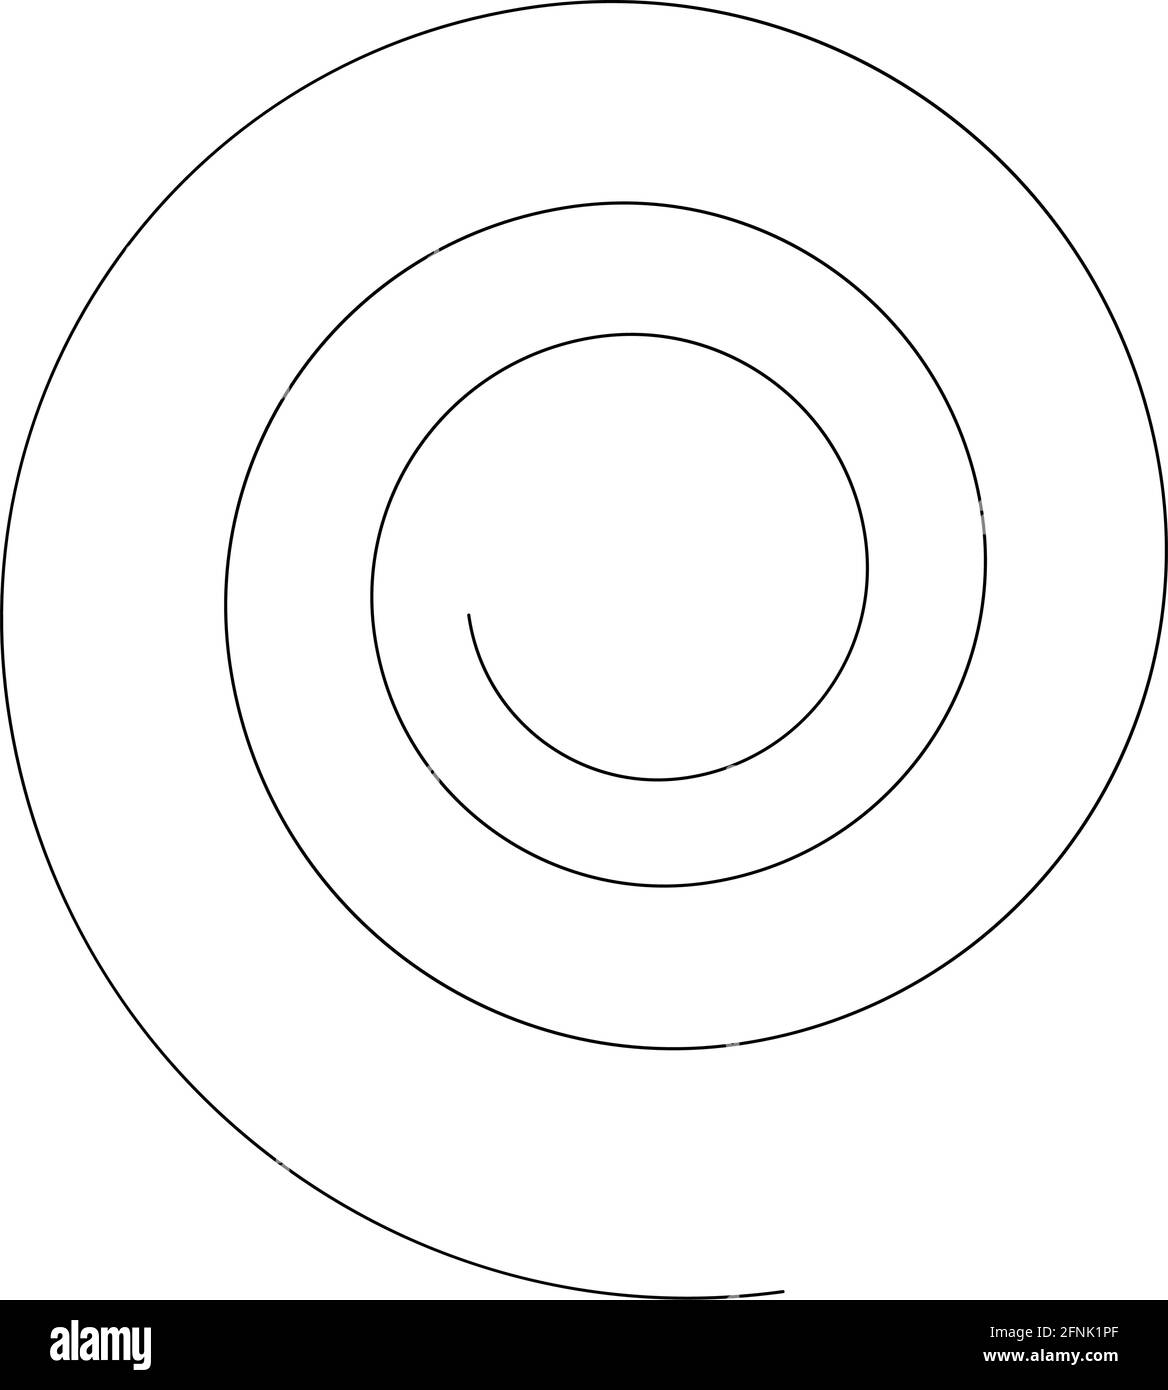 Spiralförmigendes Design-Element für Wirbel, Wirbel, Wirbel – Stock-Vektor-Illustration, Clip-Art-Grafiken Stock Vektor